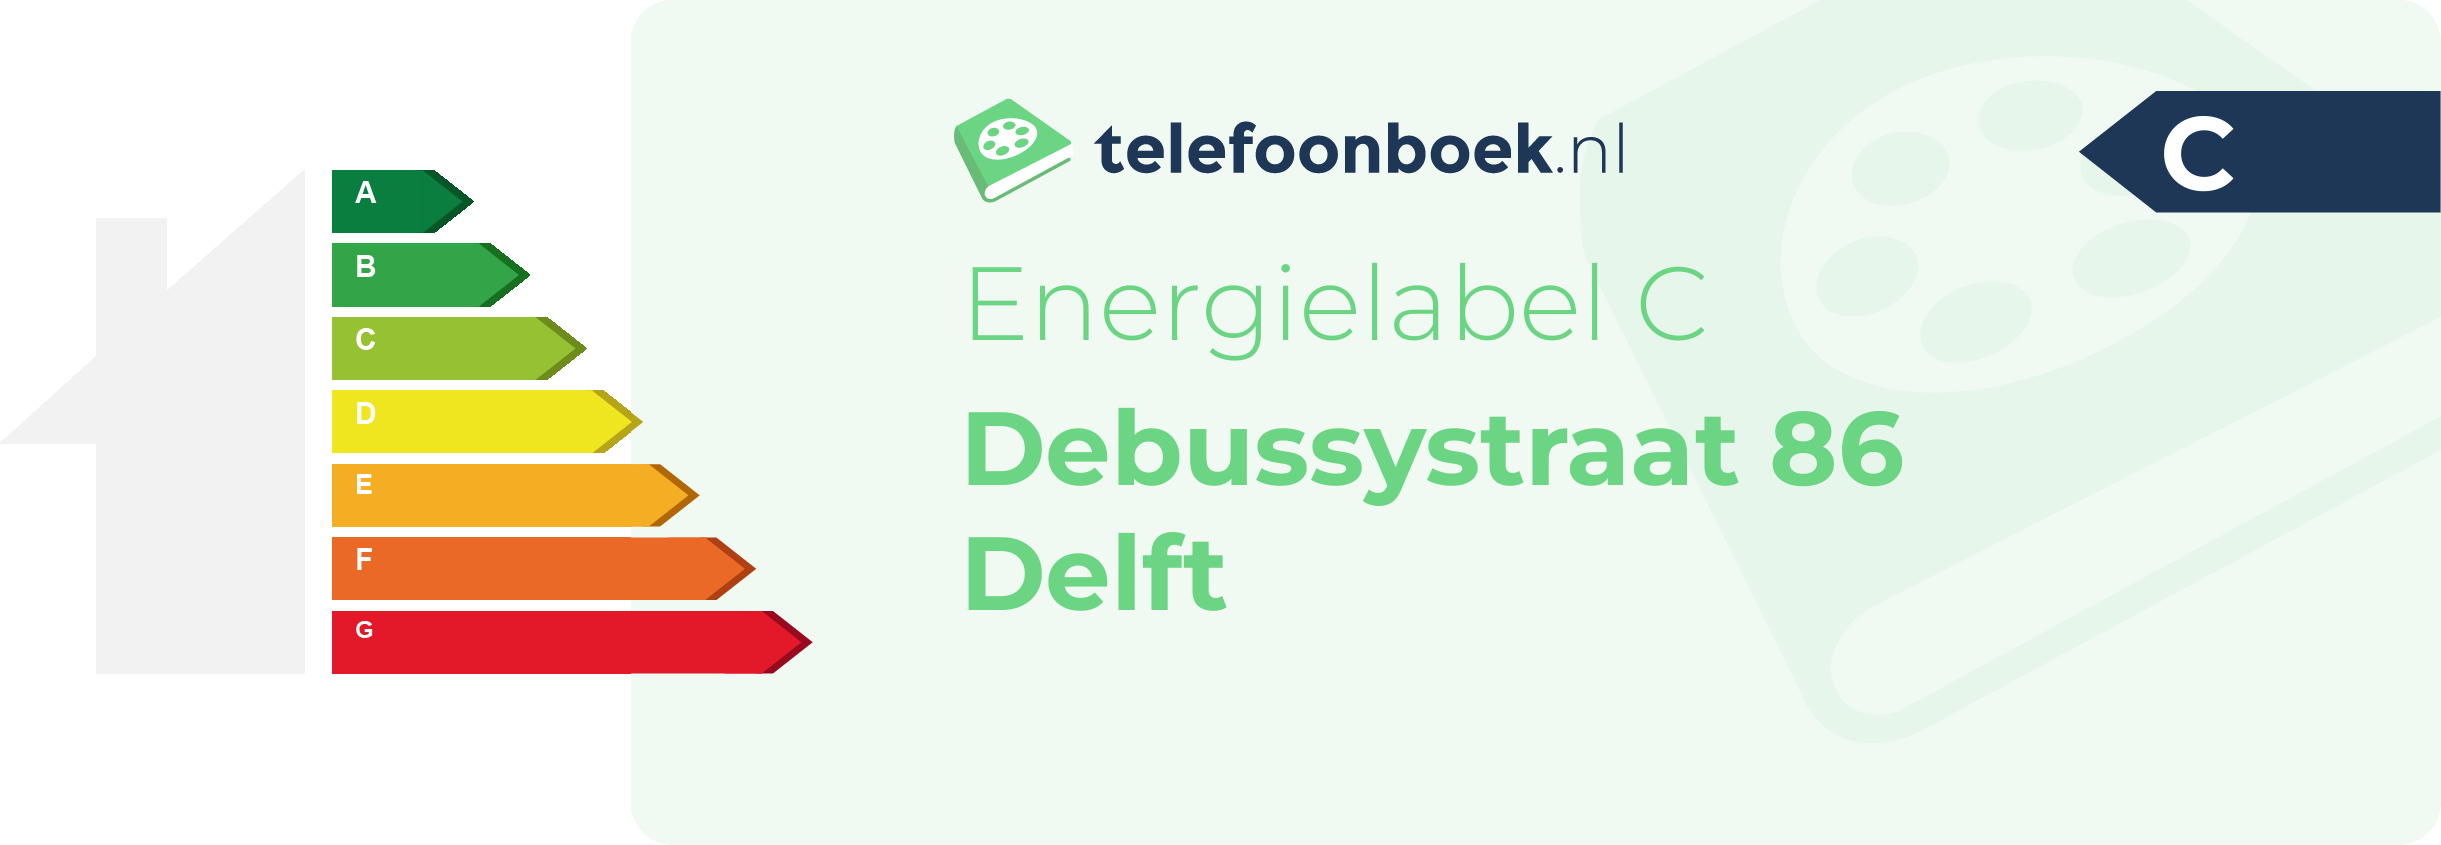 Energielabel Debussystraat 86 Delft